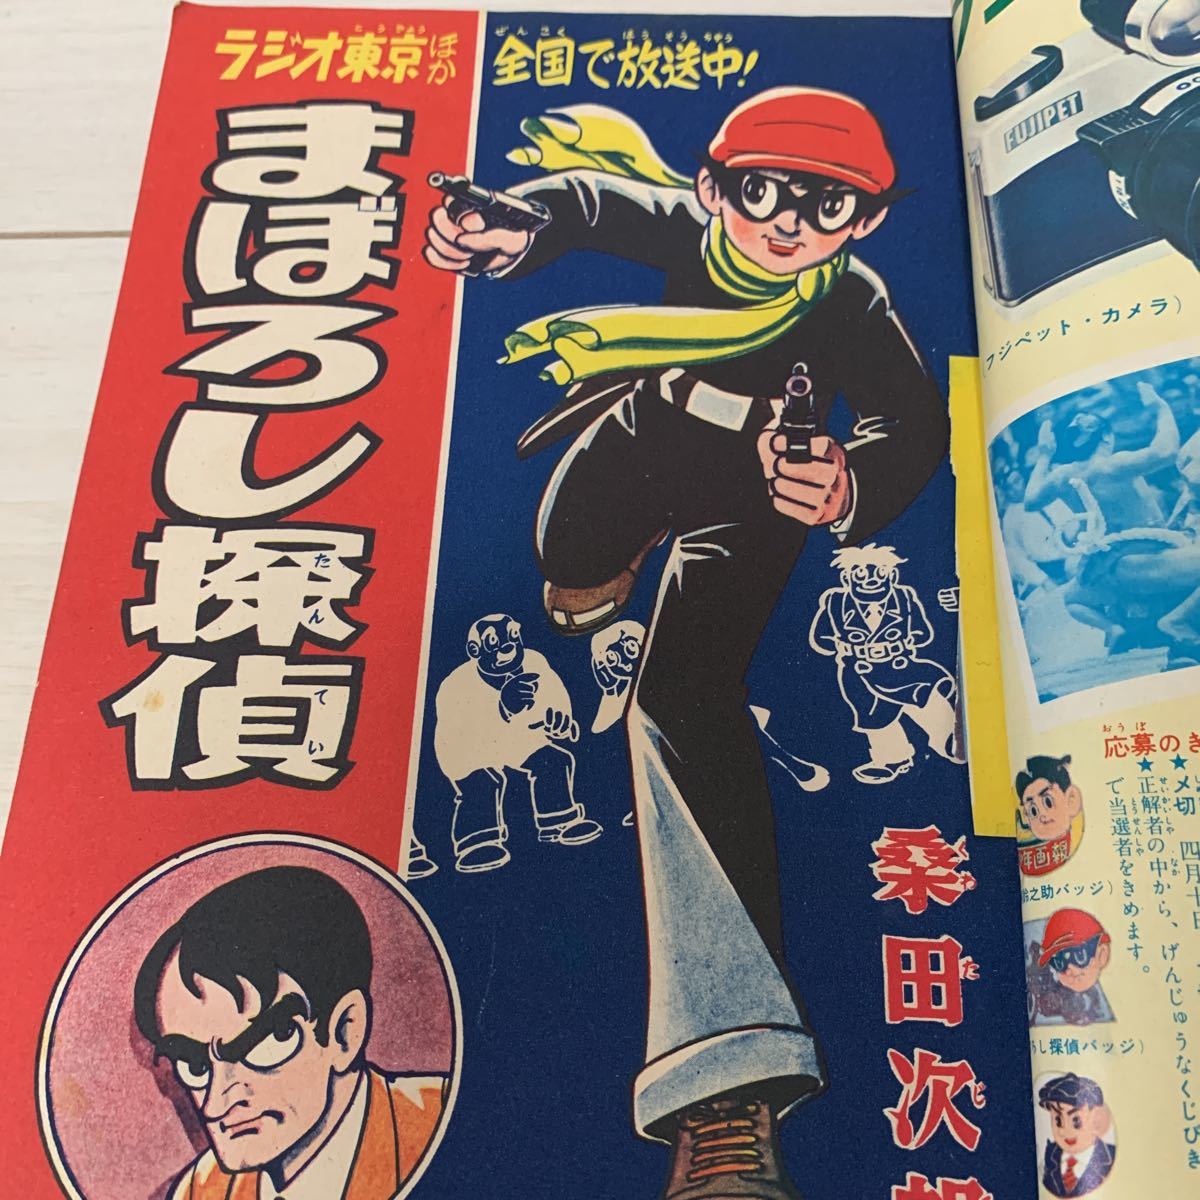 日本人気超絶の まぼろし探偵 漫画 ピンバッジ ノベルティグッズ